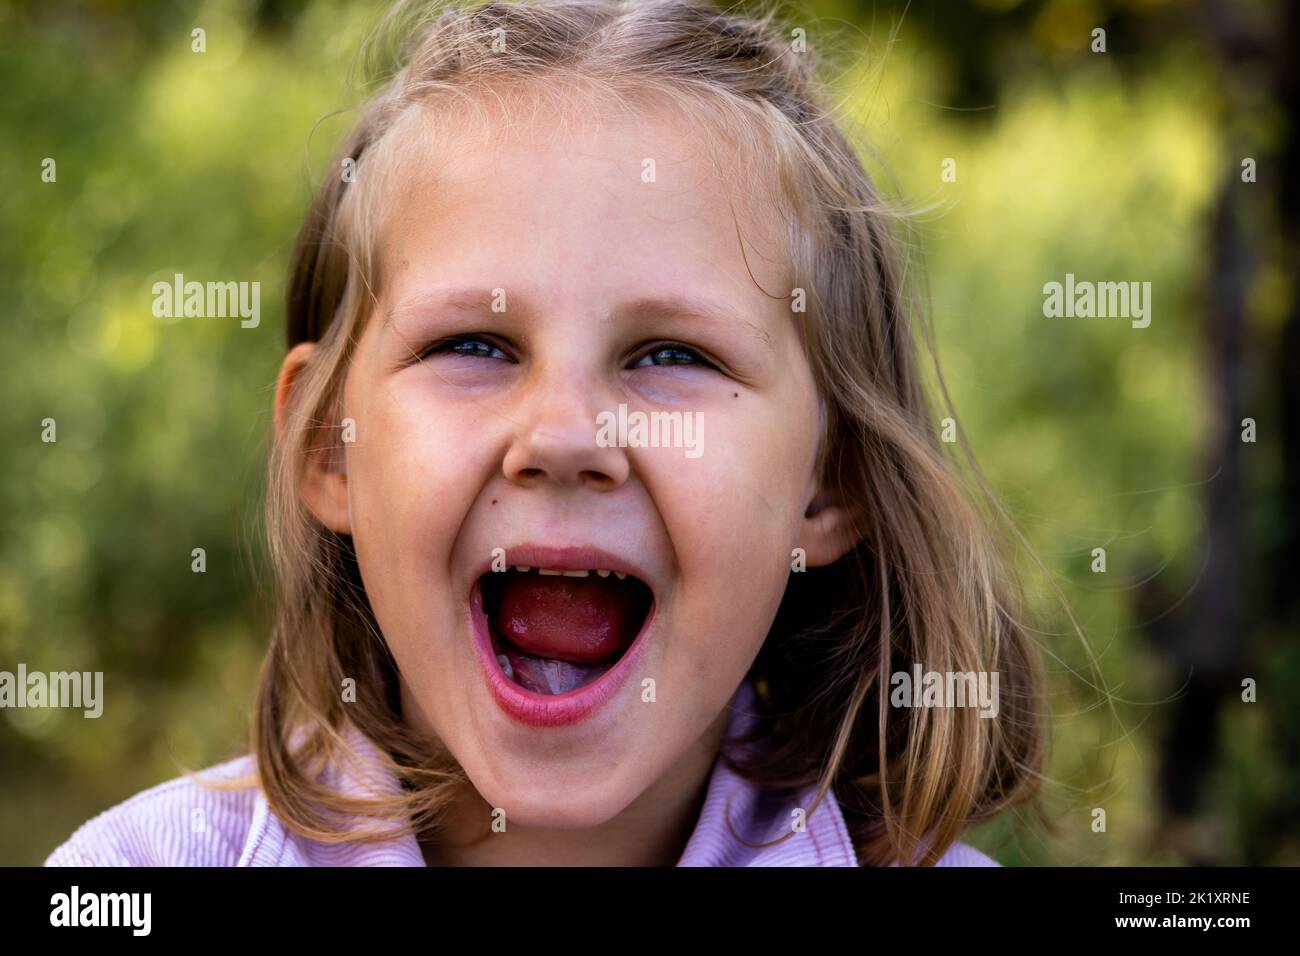 Lächelndes kleines Mädchen im Park. Speicherplatz kopieren. Glückliches Kind, das die Kamera anschaut. Porträt eines lachenden Kindes draußen. Banner. Stockfoto